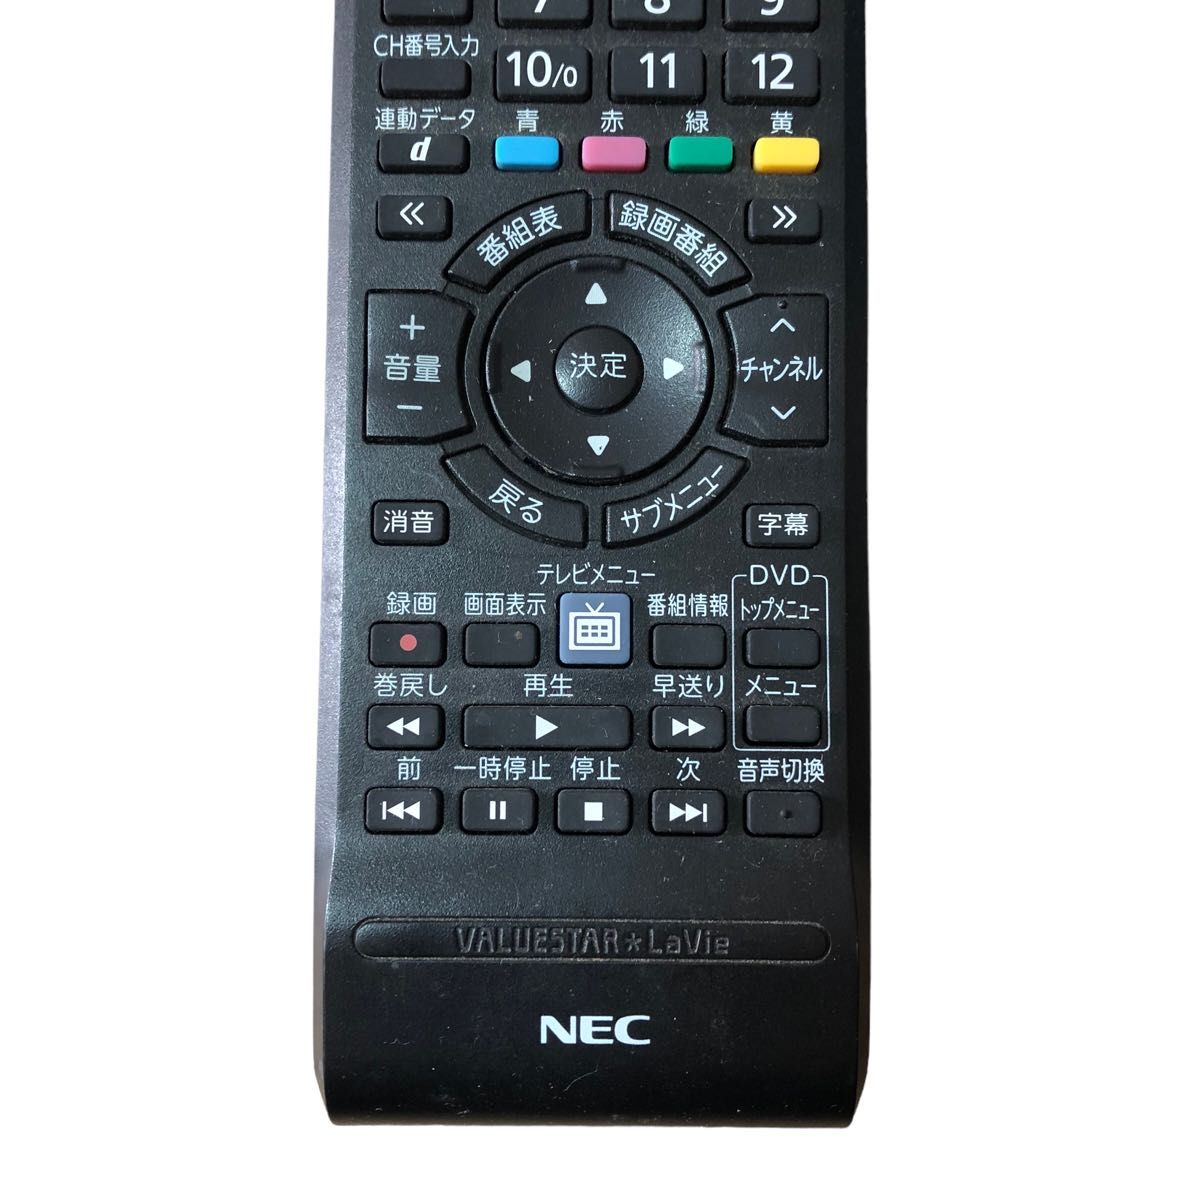 ★ NEC PC テレビ 用 リモコン VALUESTAR LaVie RC-1210 バリュースター ラビ テレビリモコン